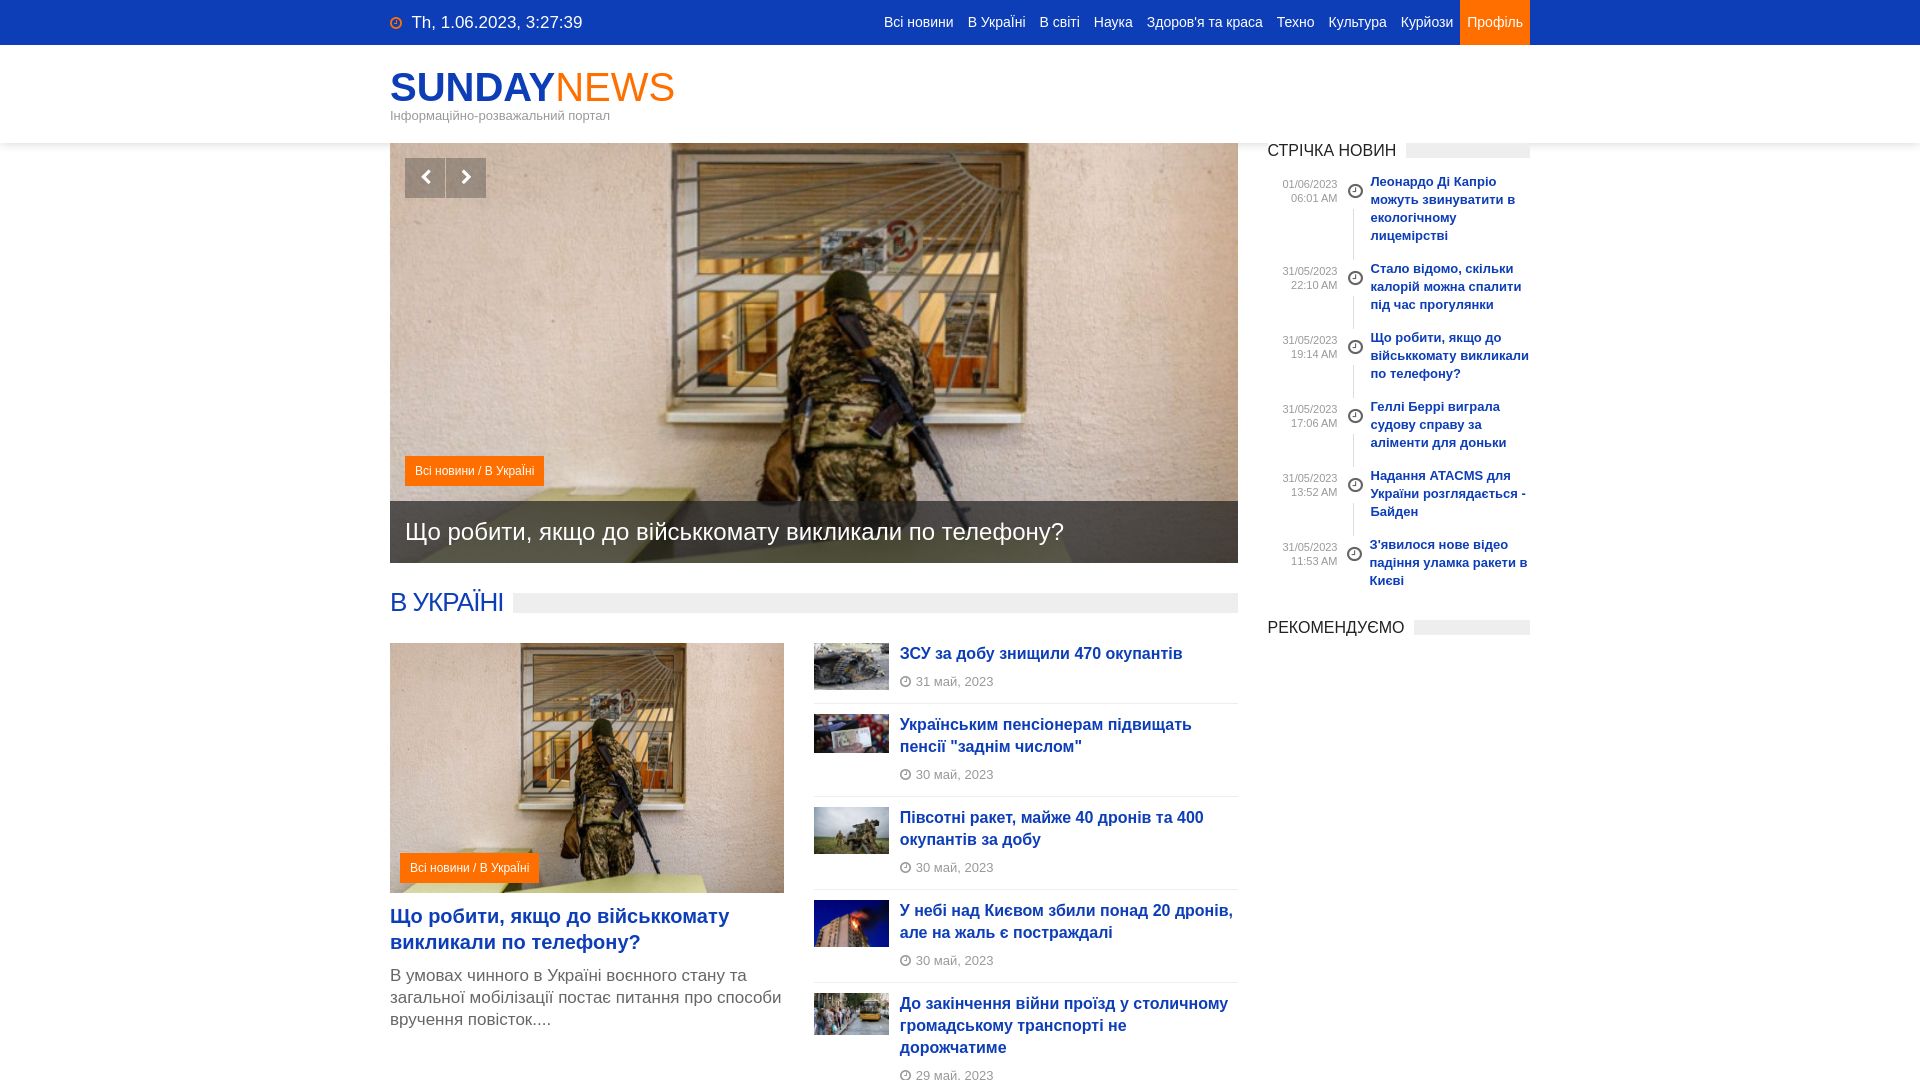 Status do site sundaynews.info está   ONLINE